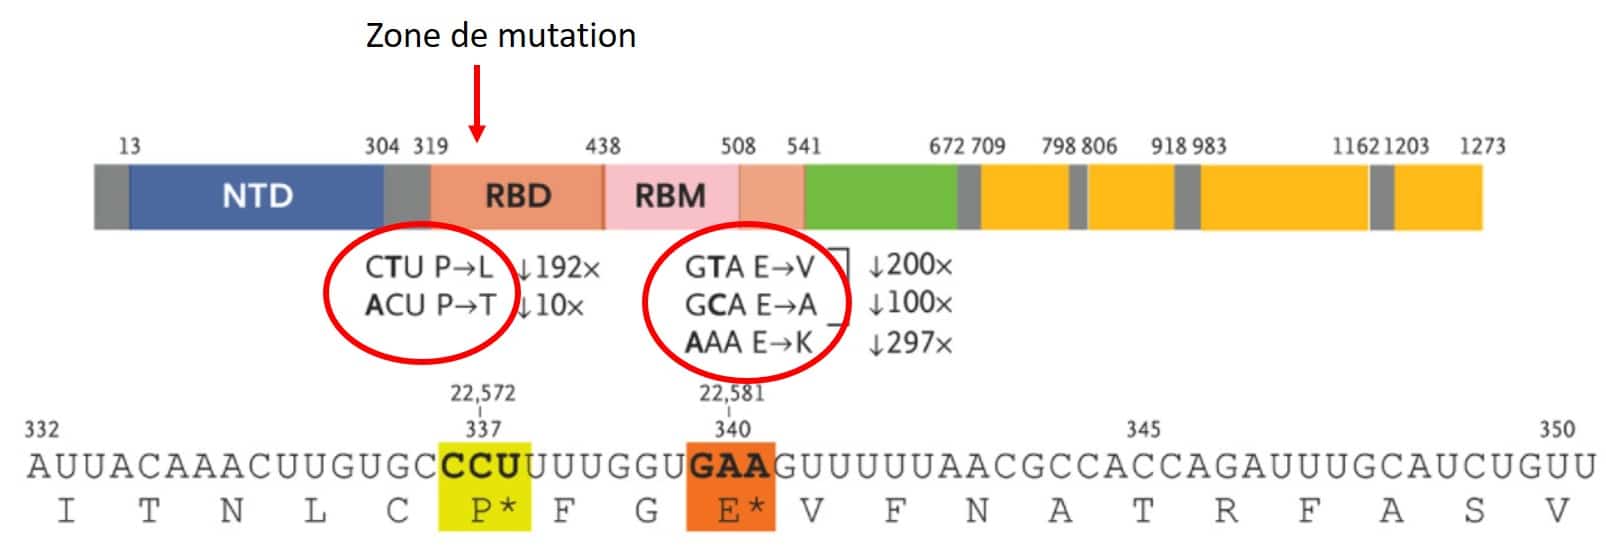 mutation sars cov 2 sotrovimab genome